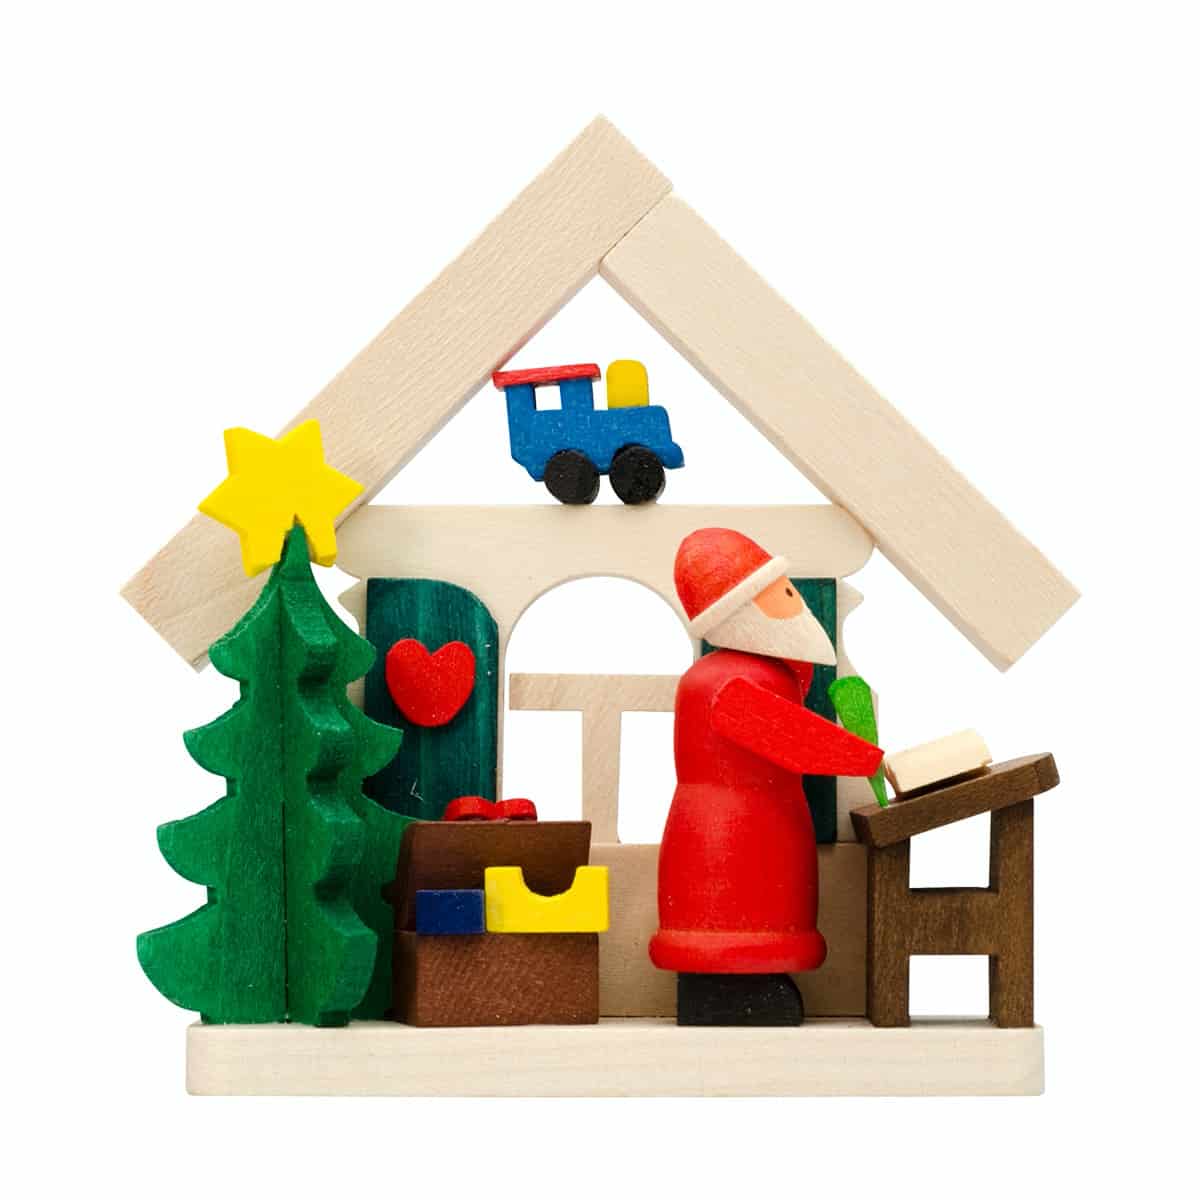 Haus Weihnachtsmann als Baumschmuck mit Wunschzettel